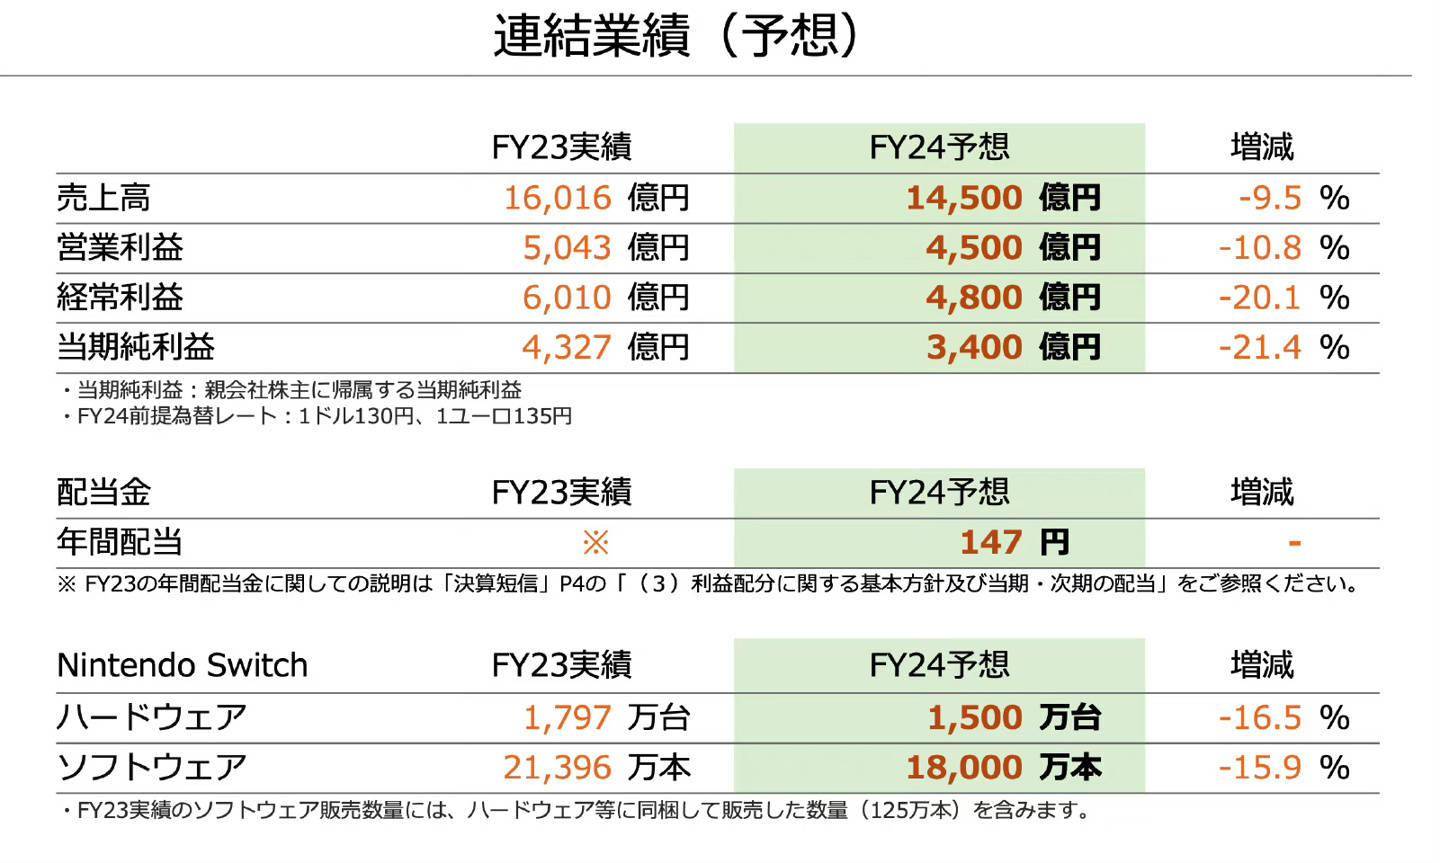 任天堂Switch销量达1.25亿台 软件销量累计10亿3615万份